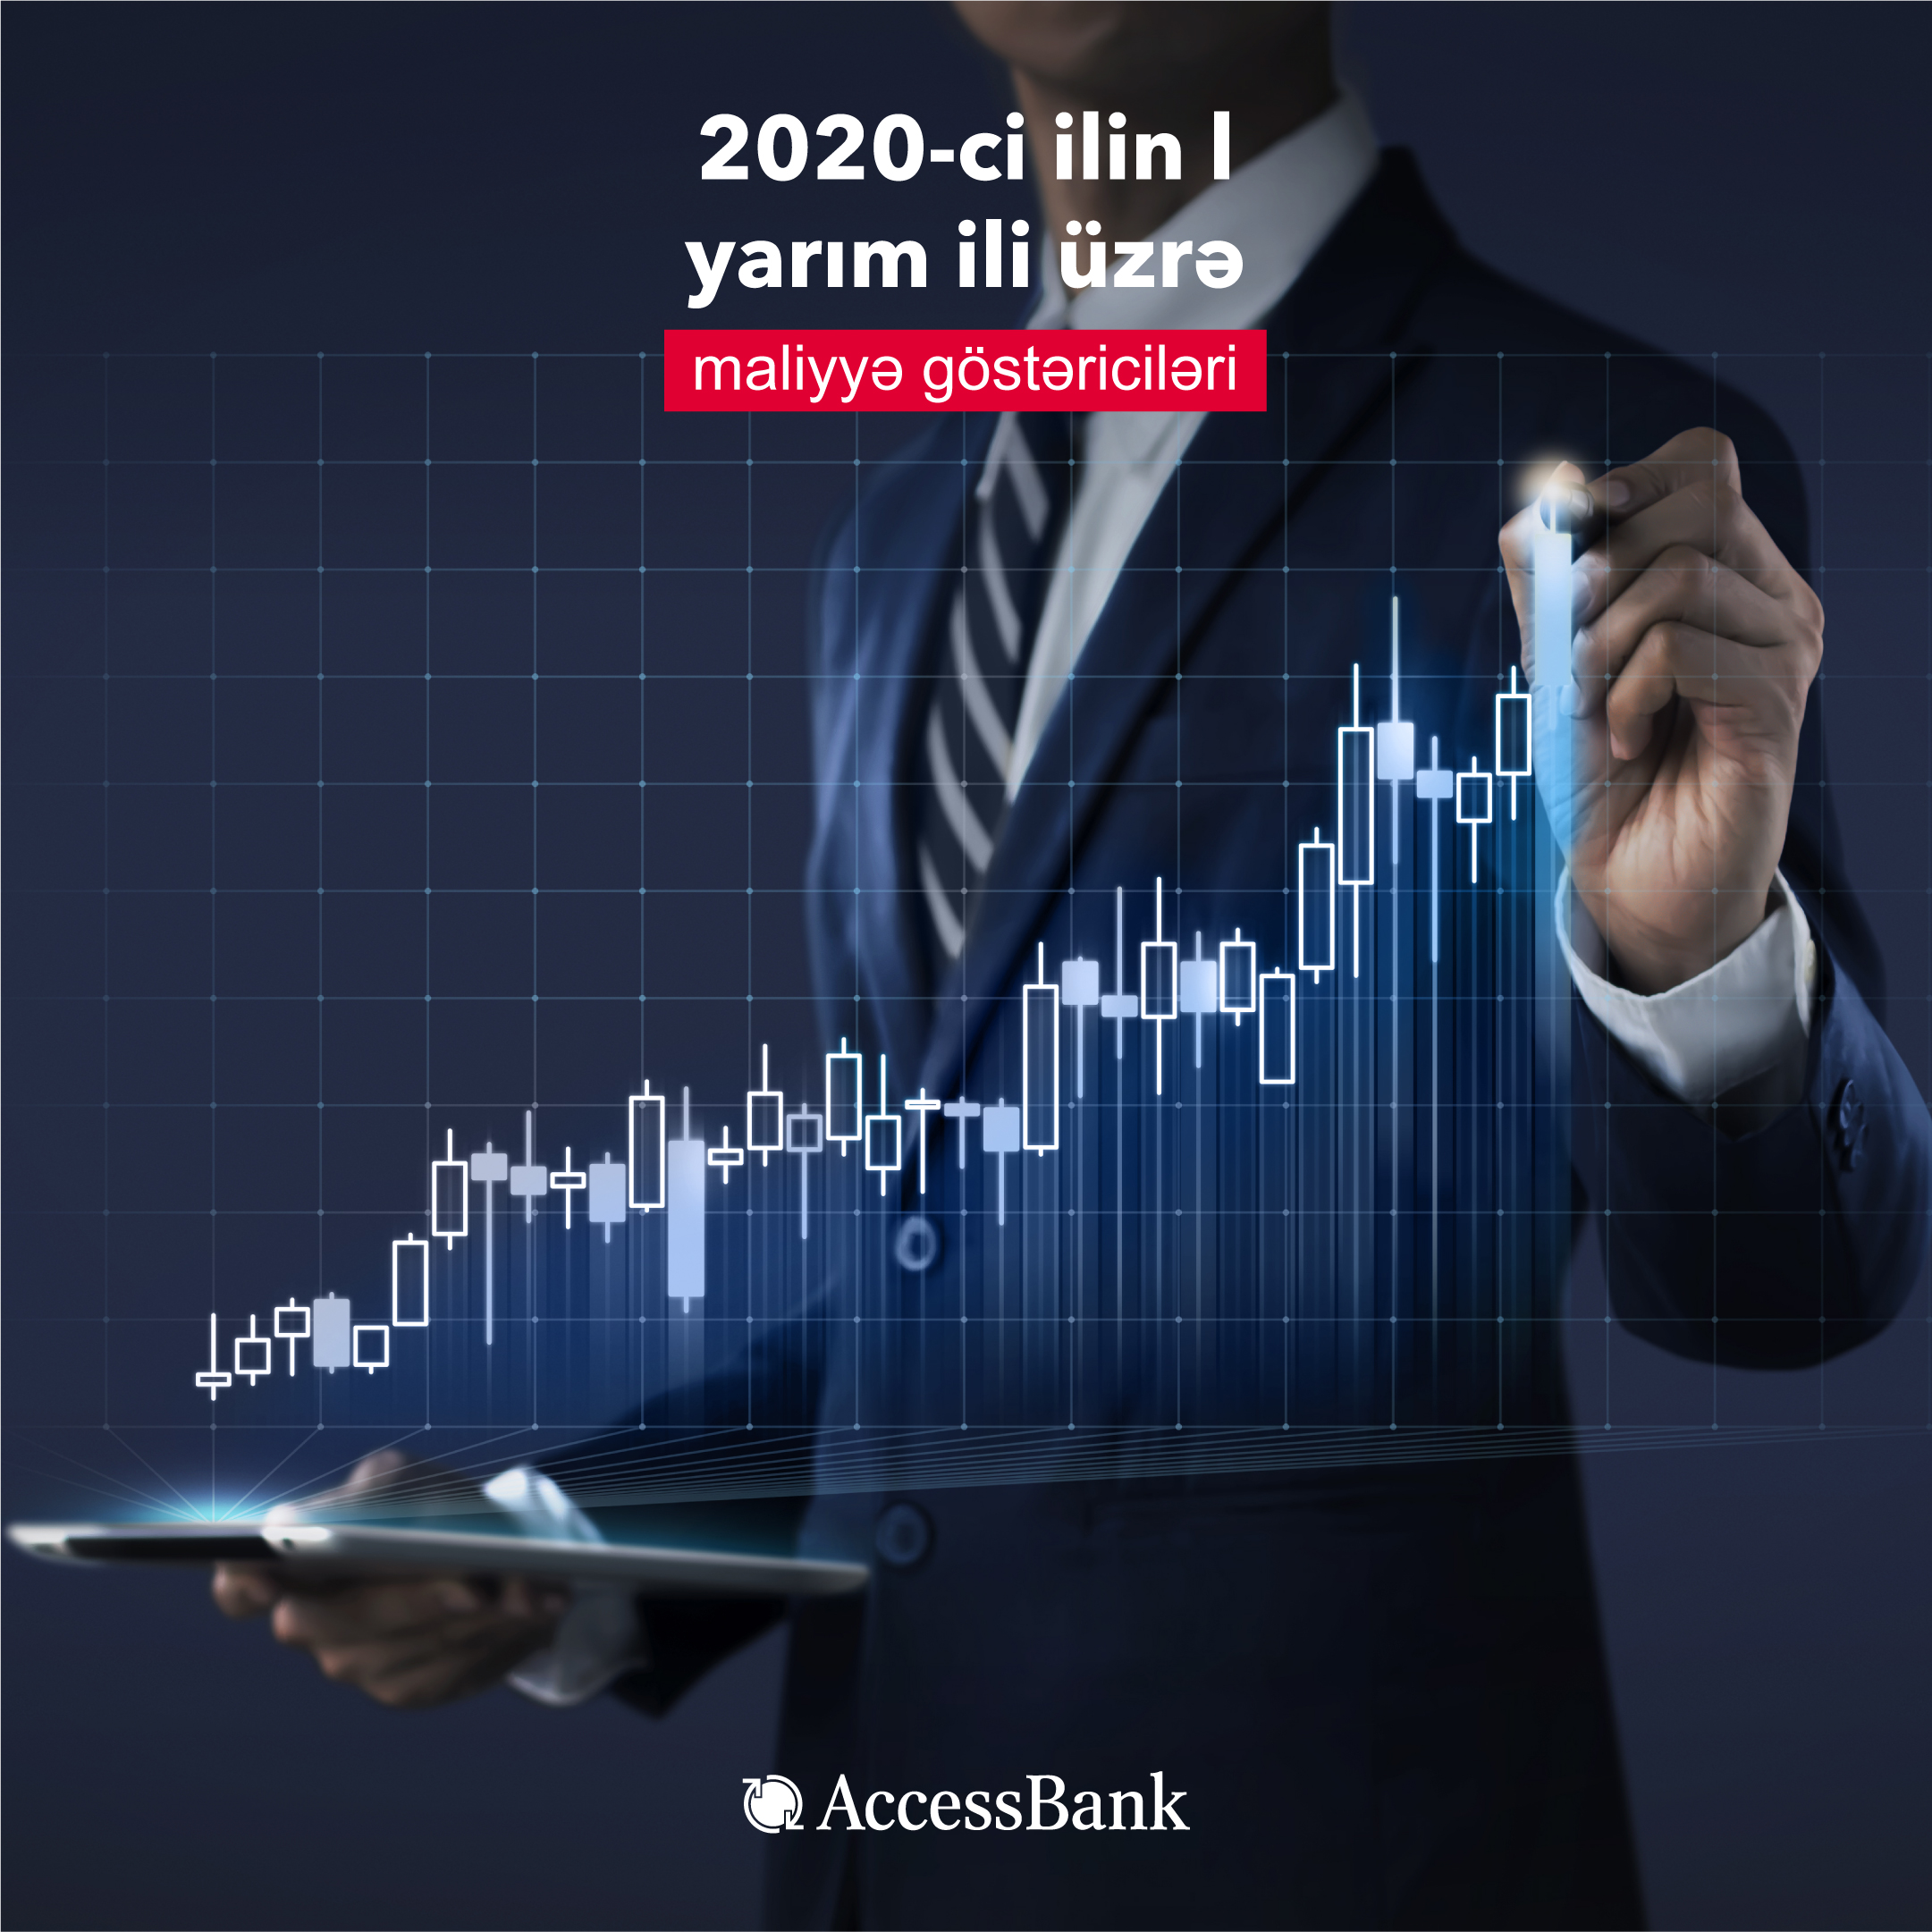 “AccessBank” 2020-ci ilin birinci yarısını mənfəətlə başa vurdu